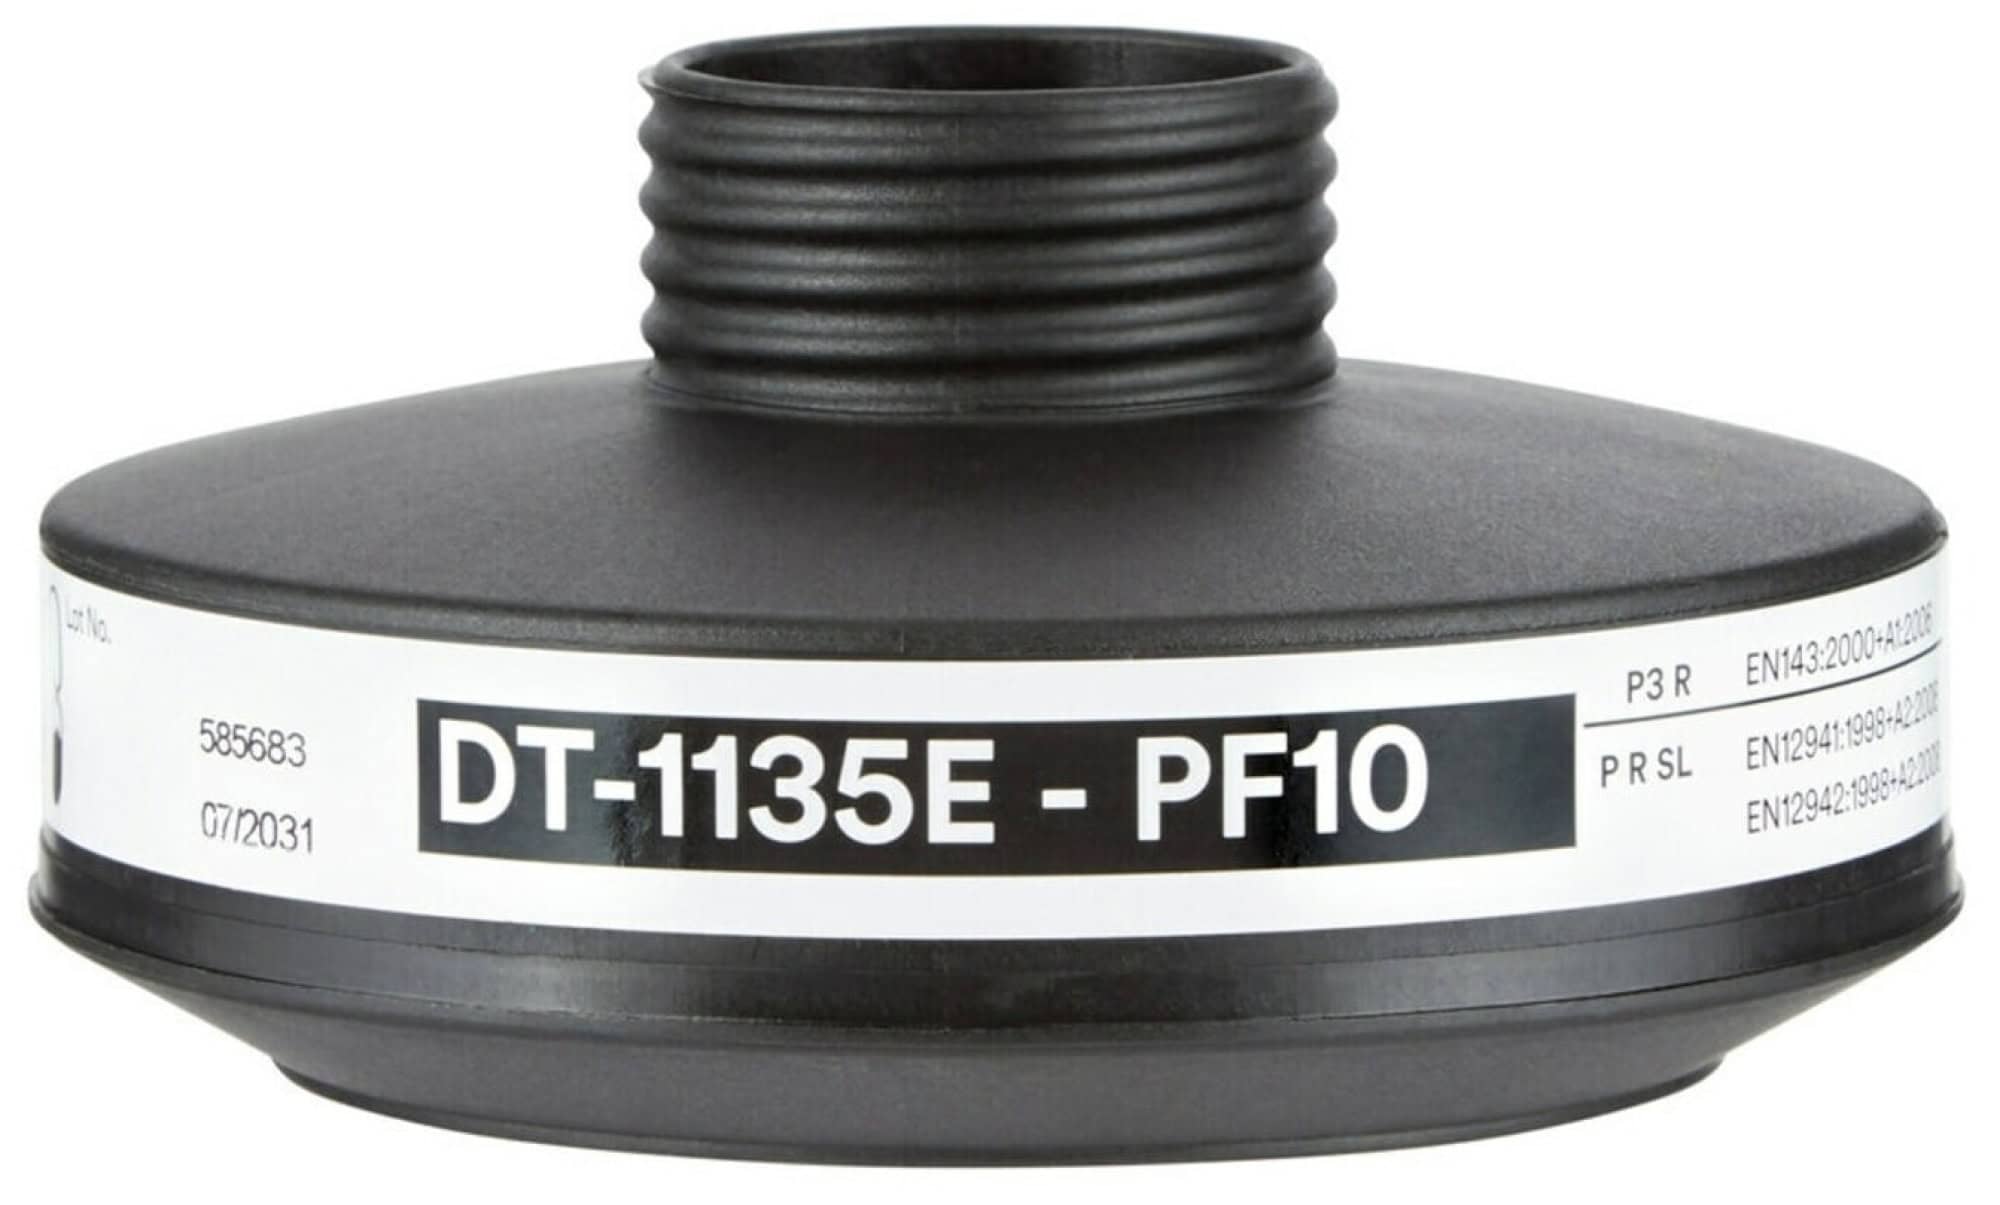 DT-1135E20